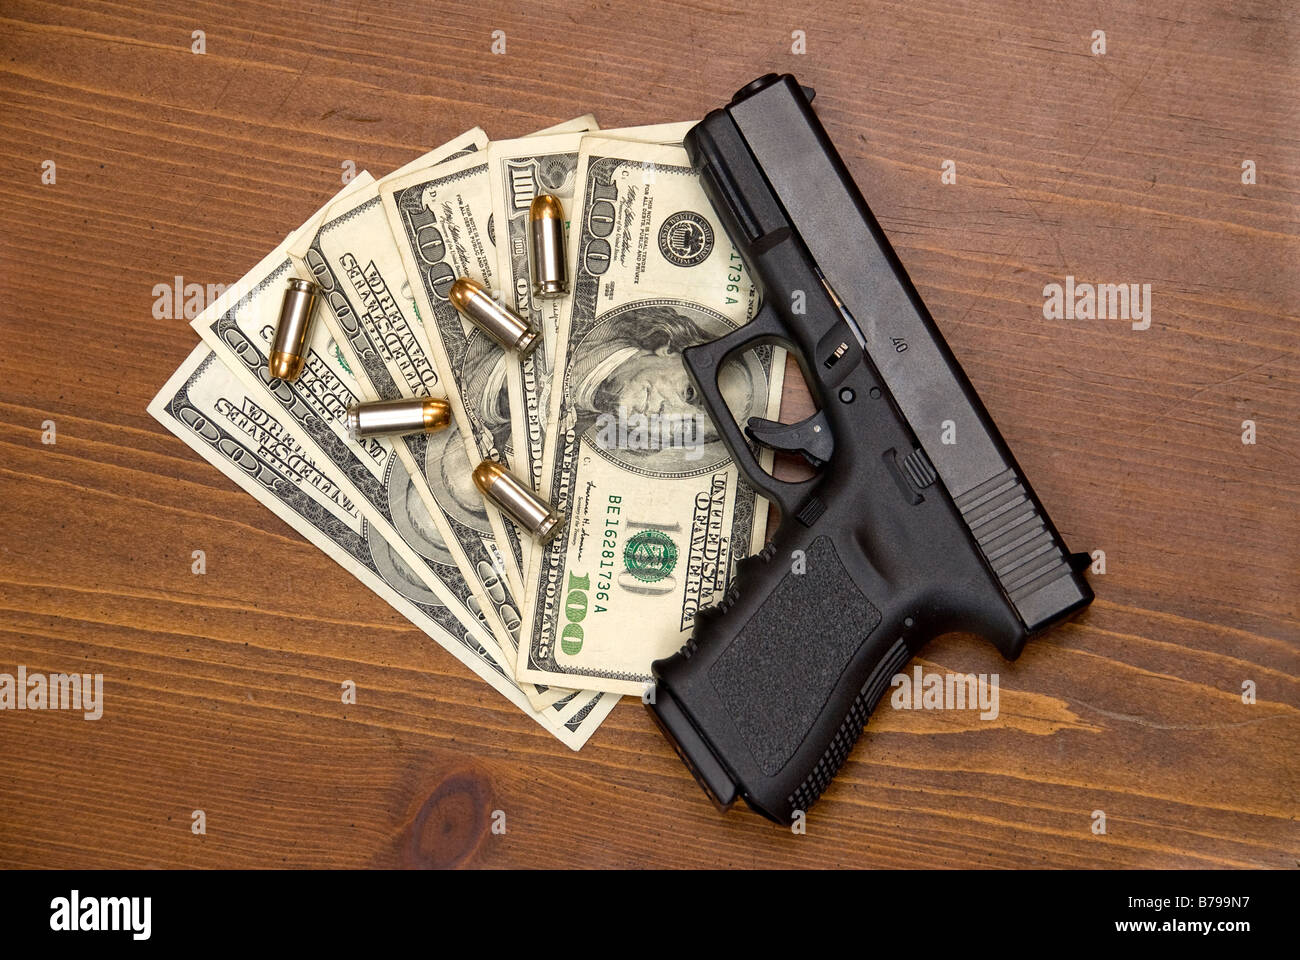 Les balles et une arme à feu sur une table Banque D'Images